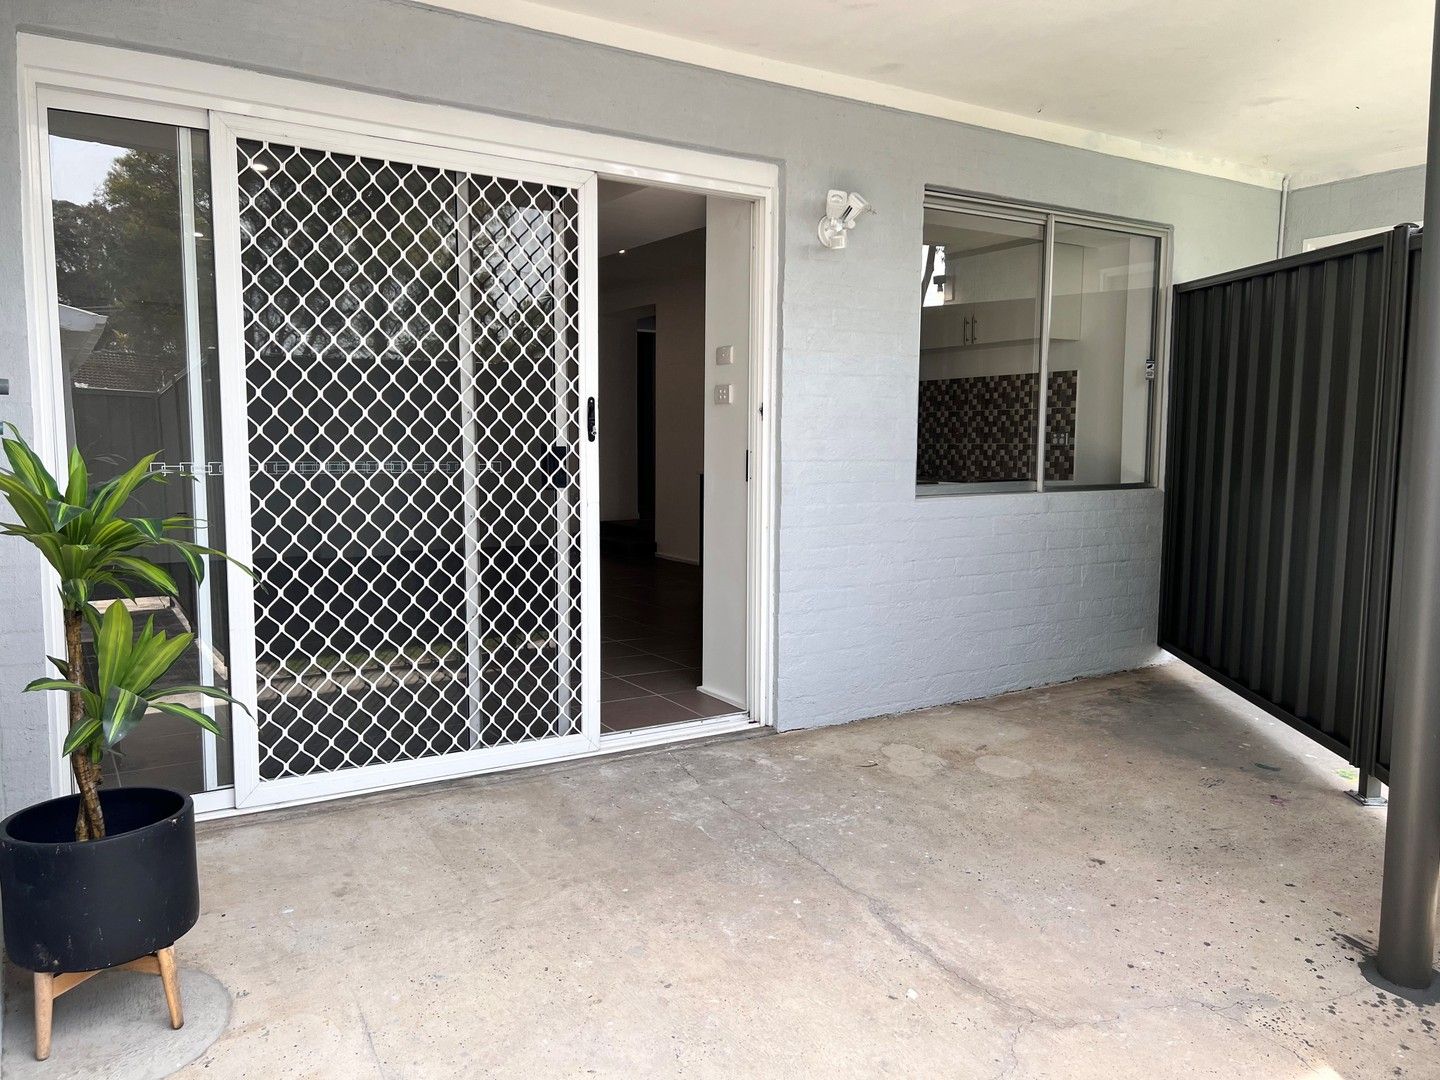 2 bedrooms House in 25a Brennon Road GOROKAN NSW, 2263